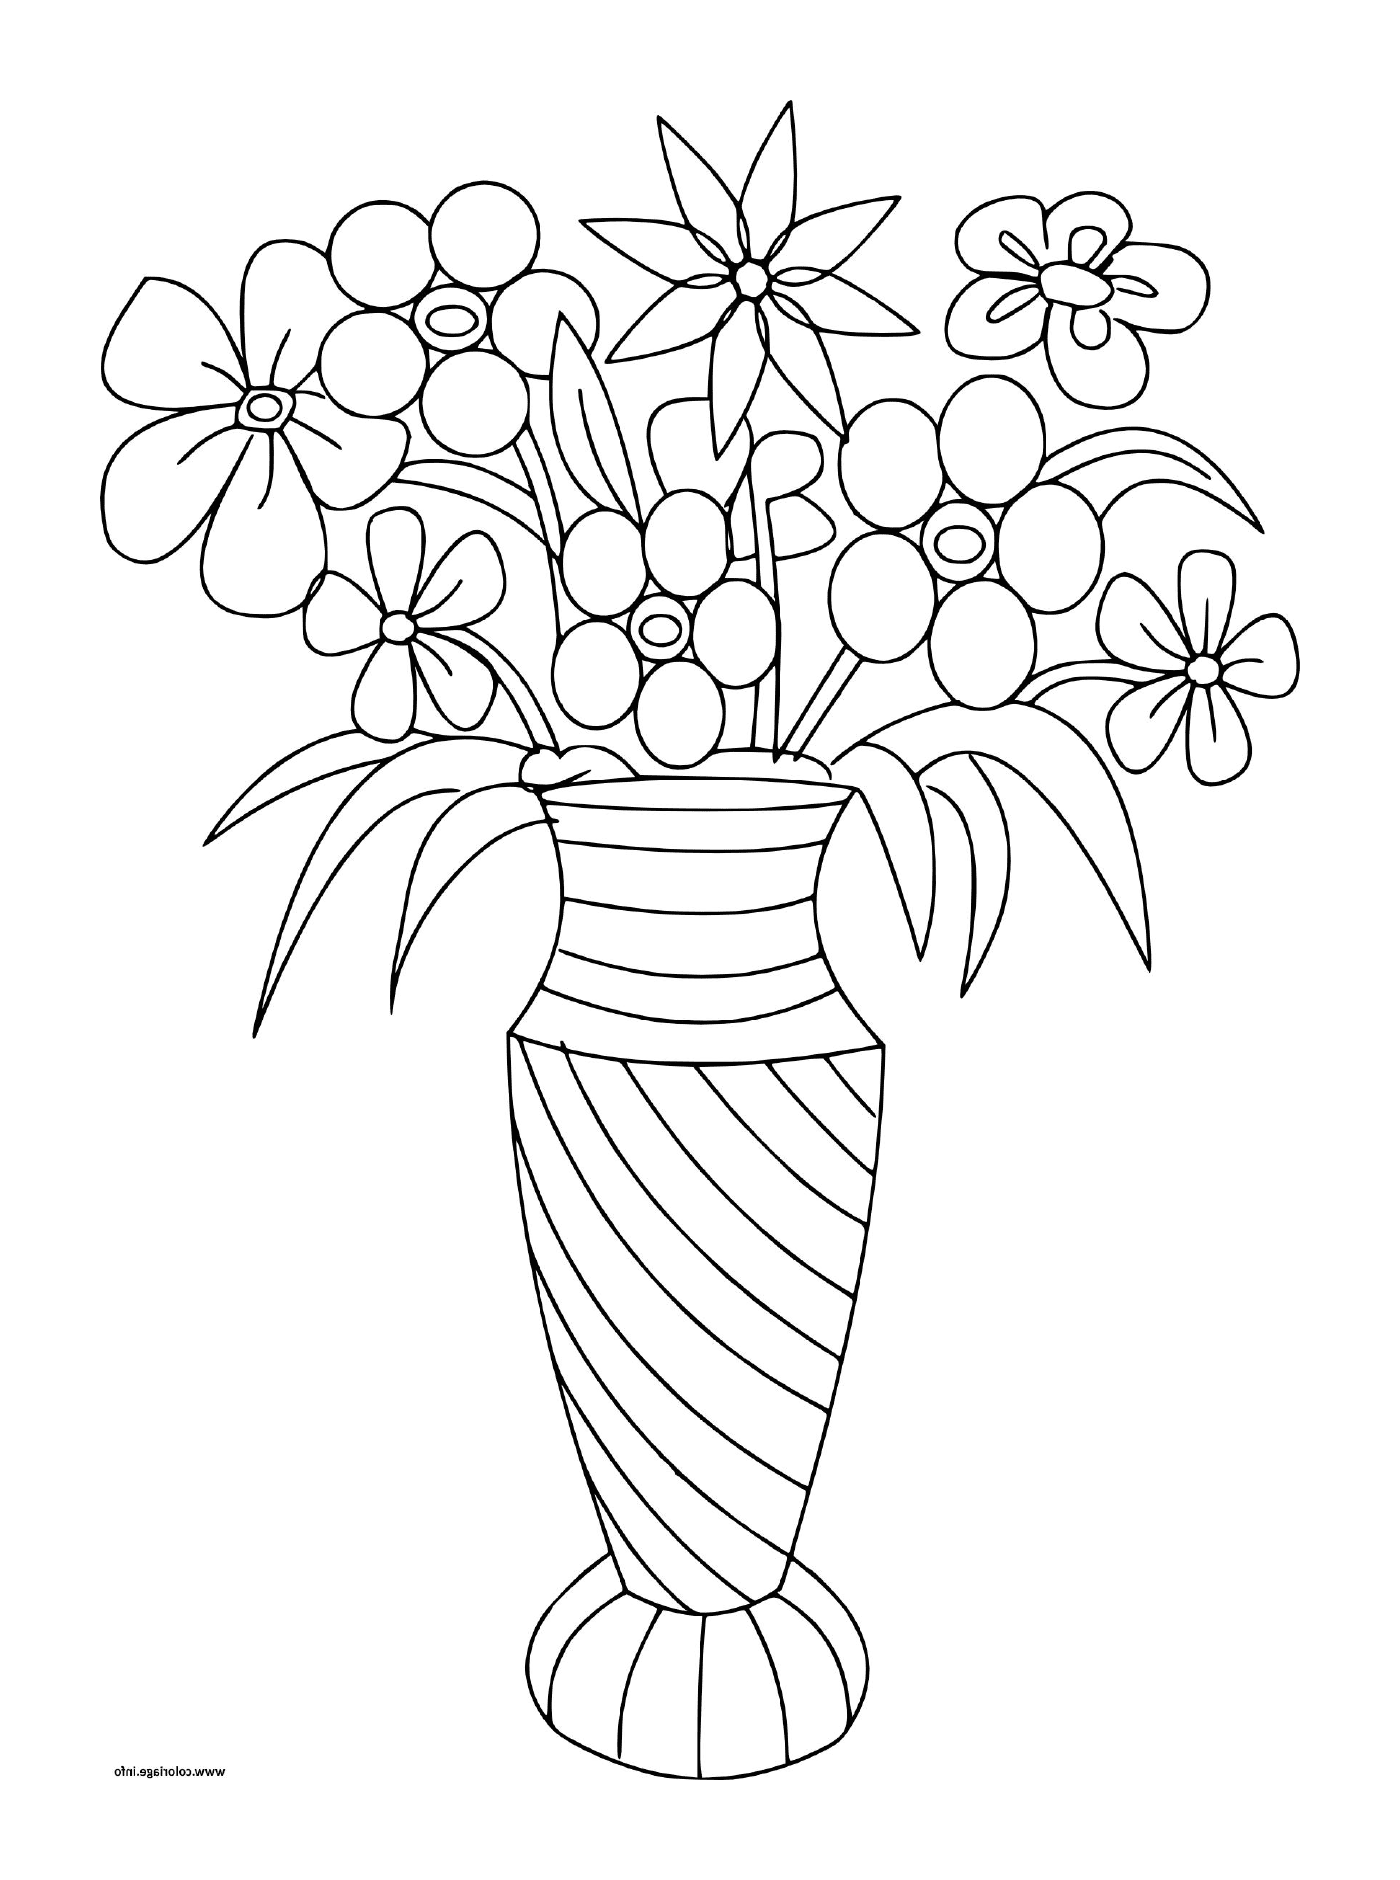  Mazzi di fiori vari in un vaso 